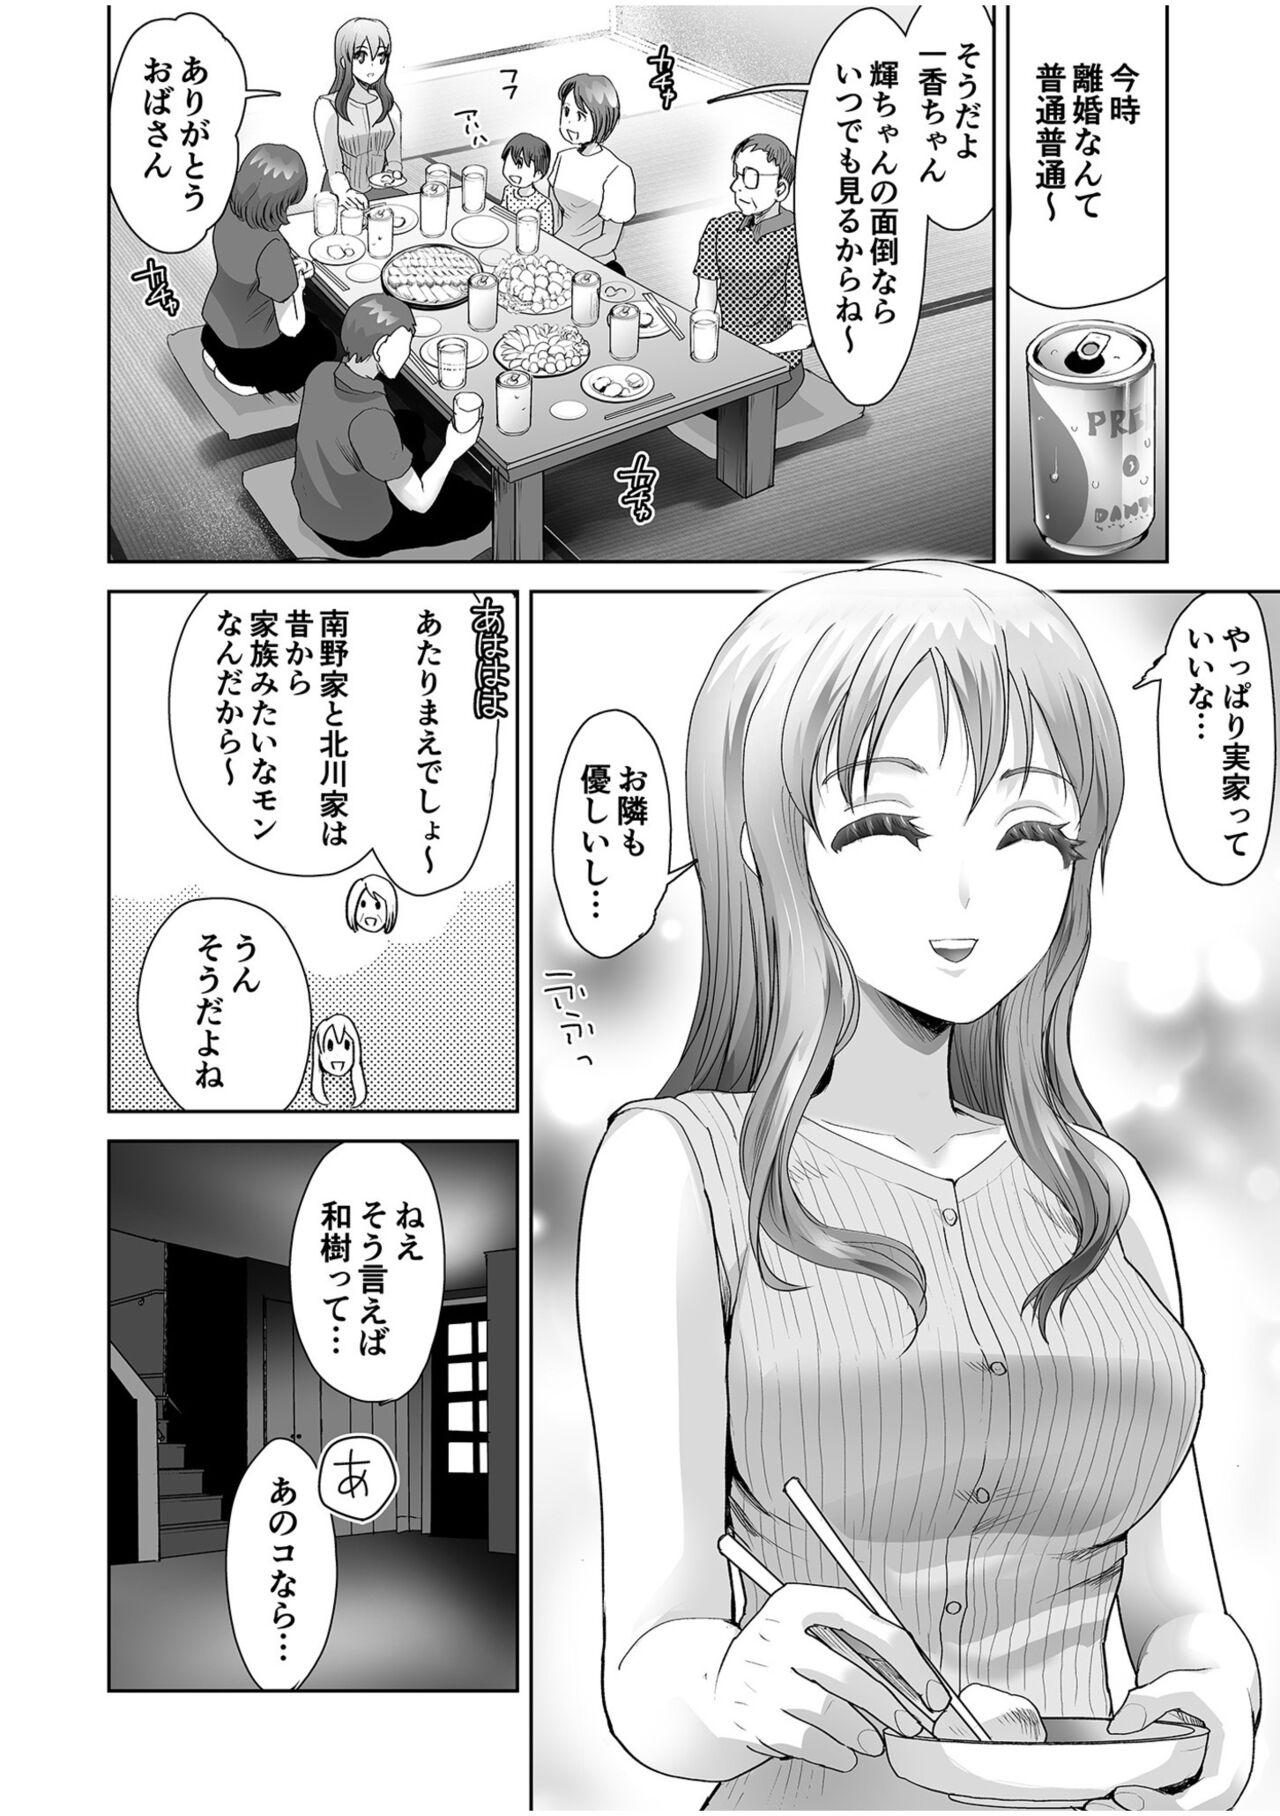 Erotic Maid Mimi Japan 161